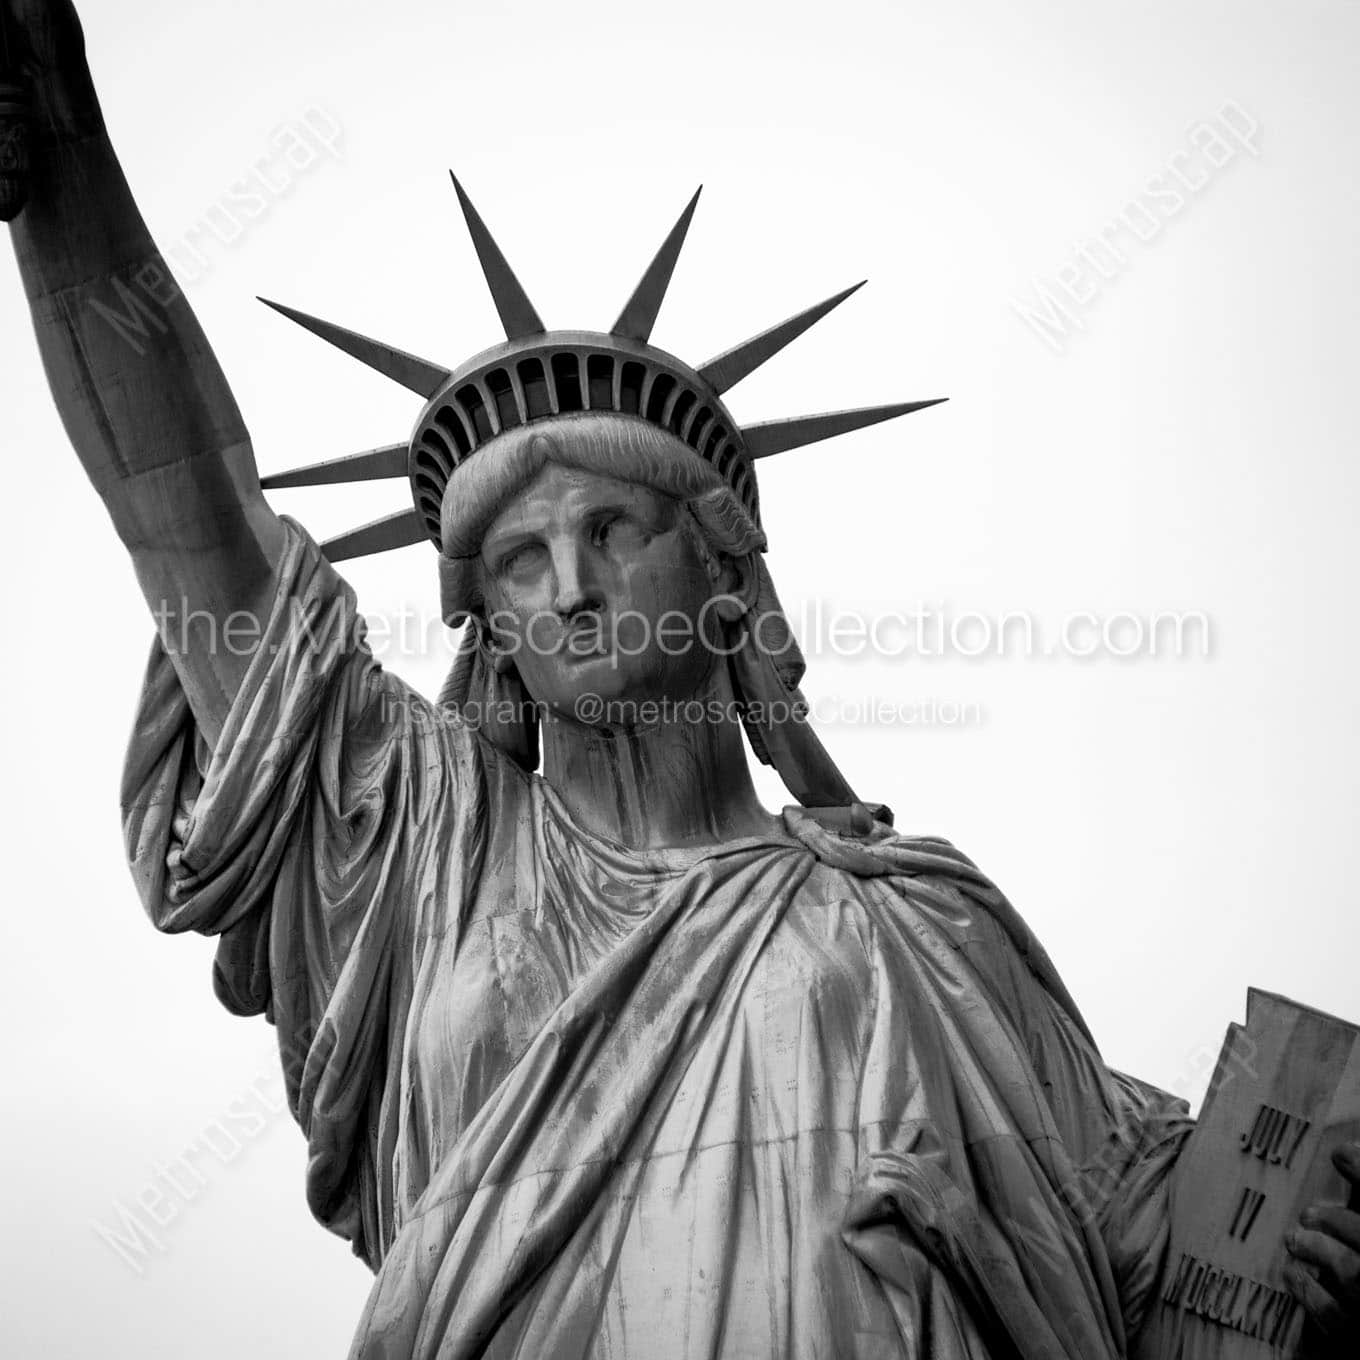 statue of liberty Black & White Wall Art